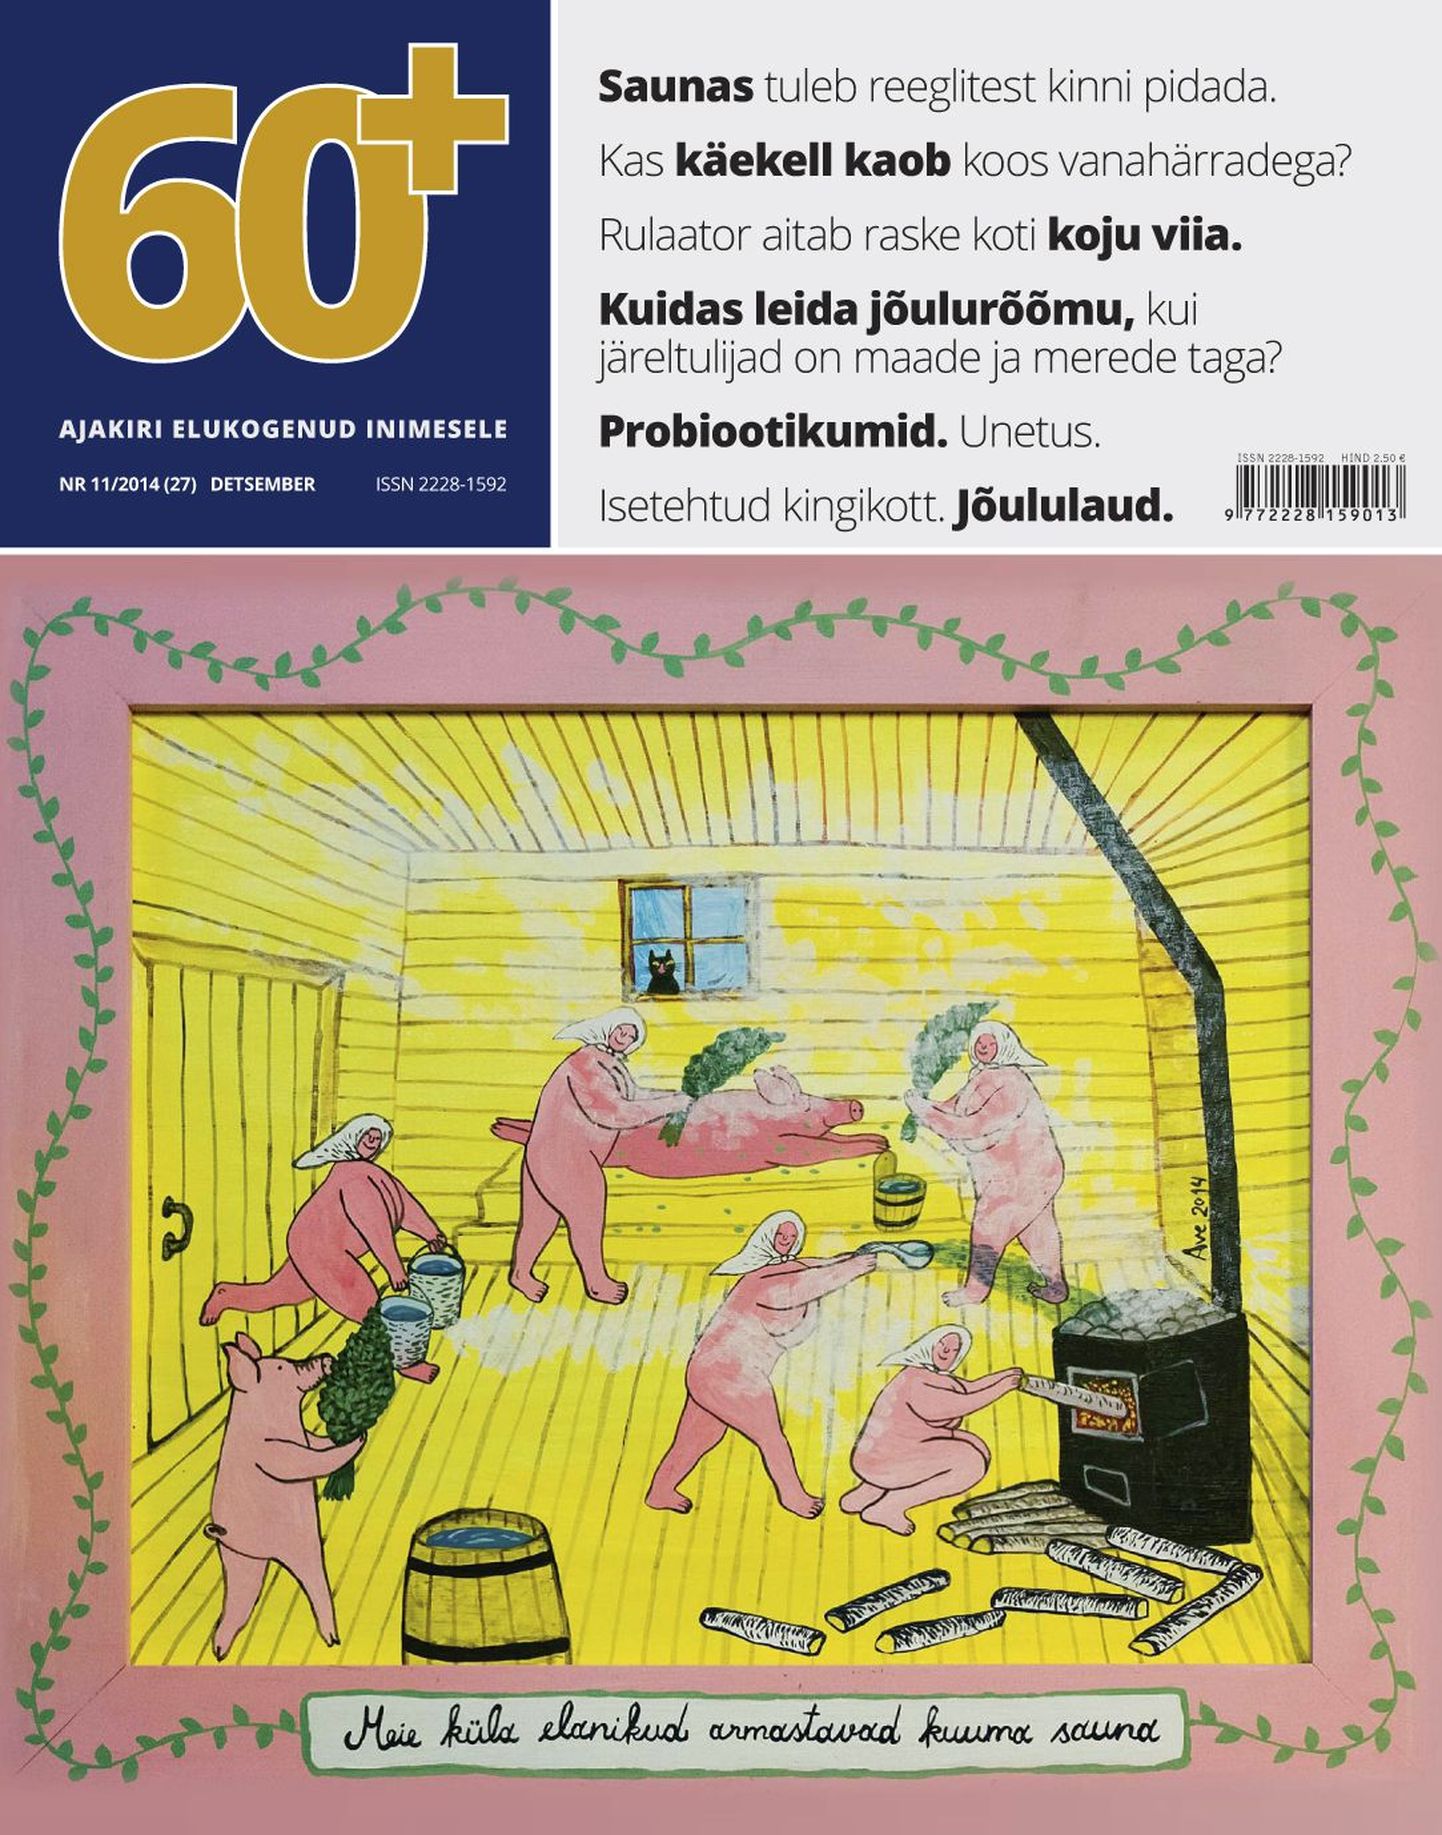 Ajakirja 60+ detsembrikuu number.